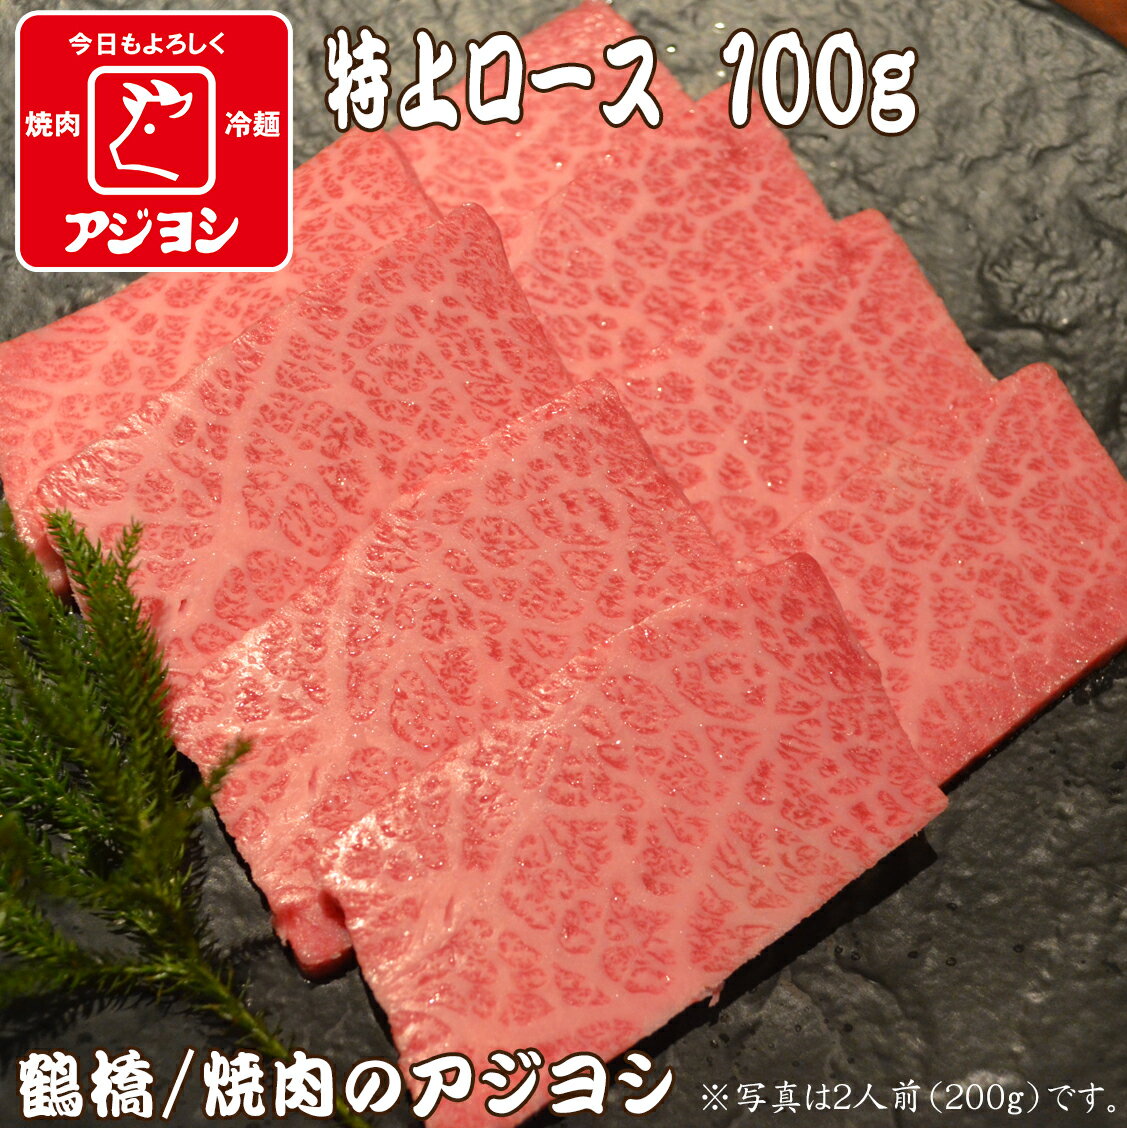 【鶴橋・焼肉のアジヨシ】牛肉 国産 特上ロース100g